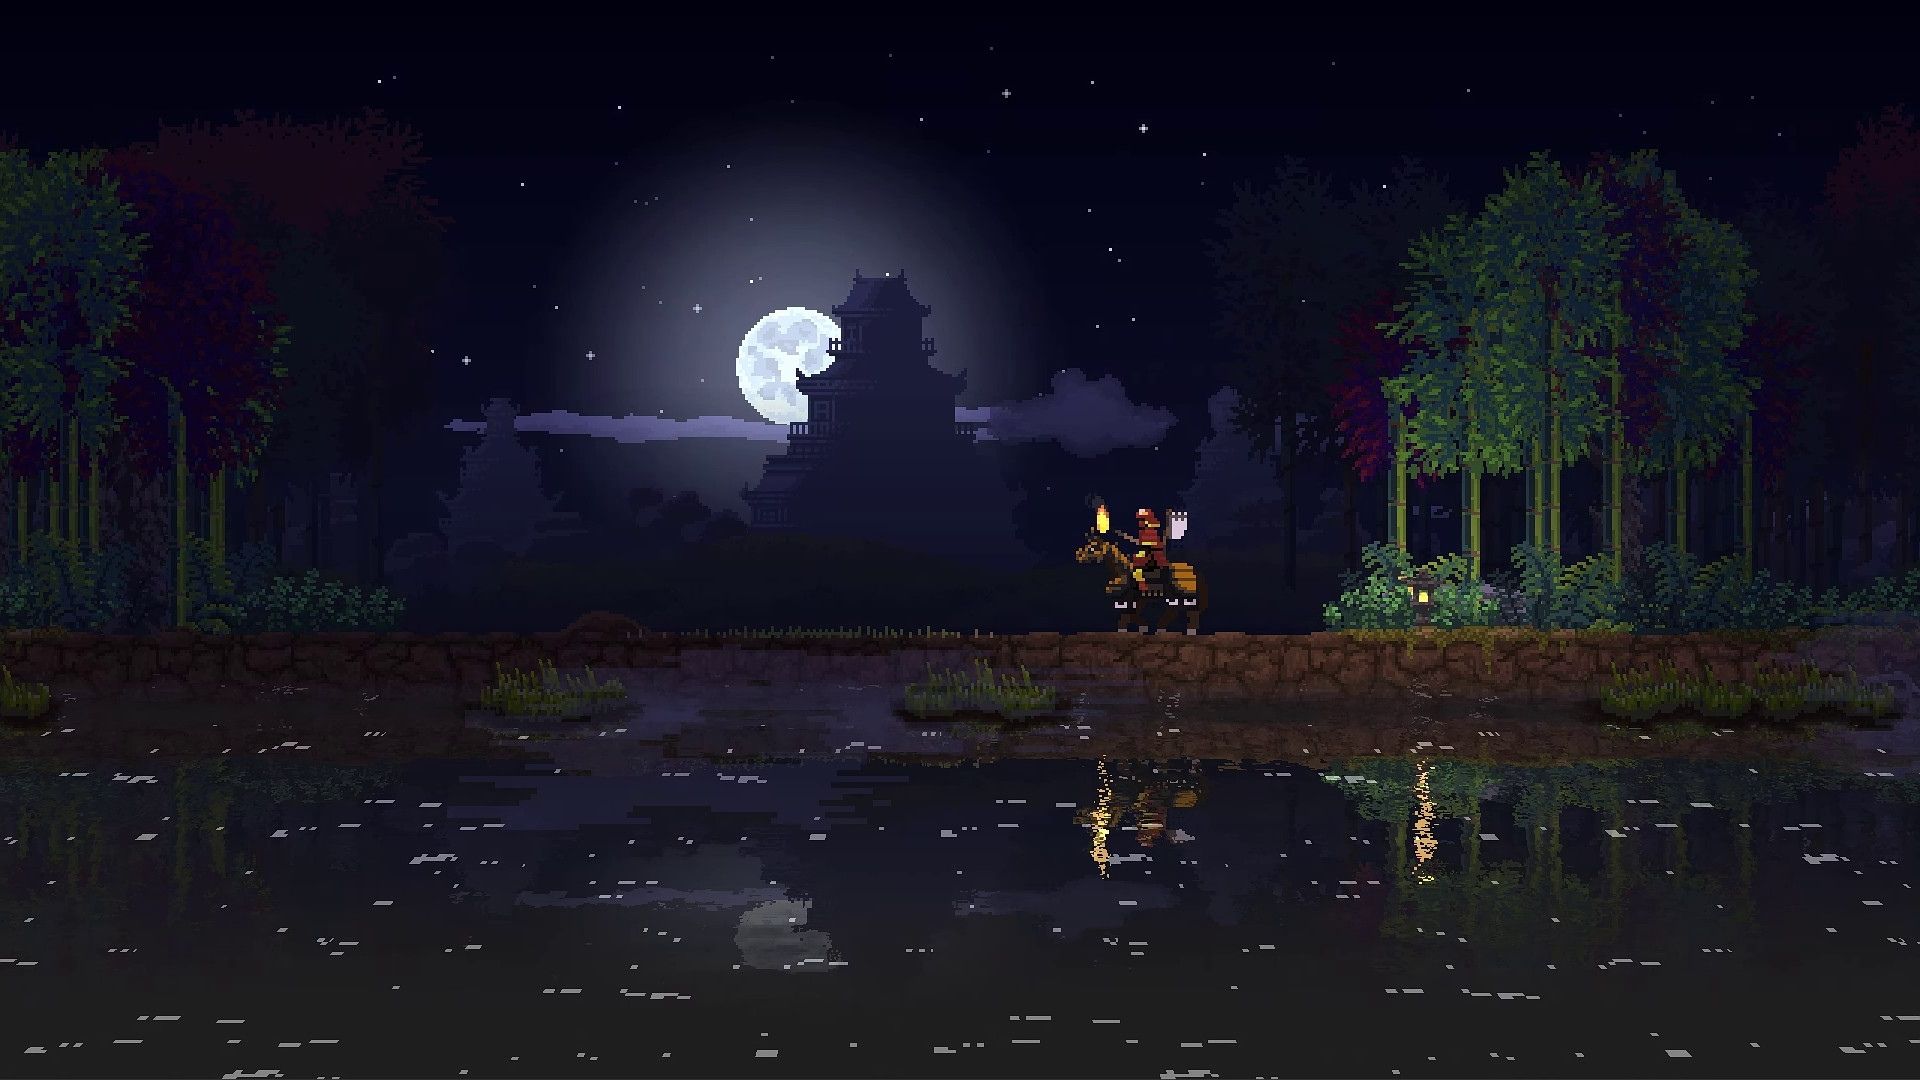 Una captura de pantalla del reino dos coronas, que muestra a una persona en un caballo, un lago y la luna